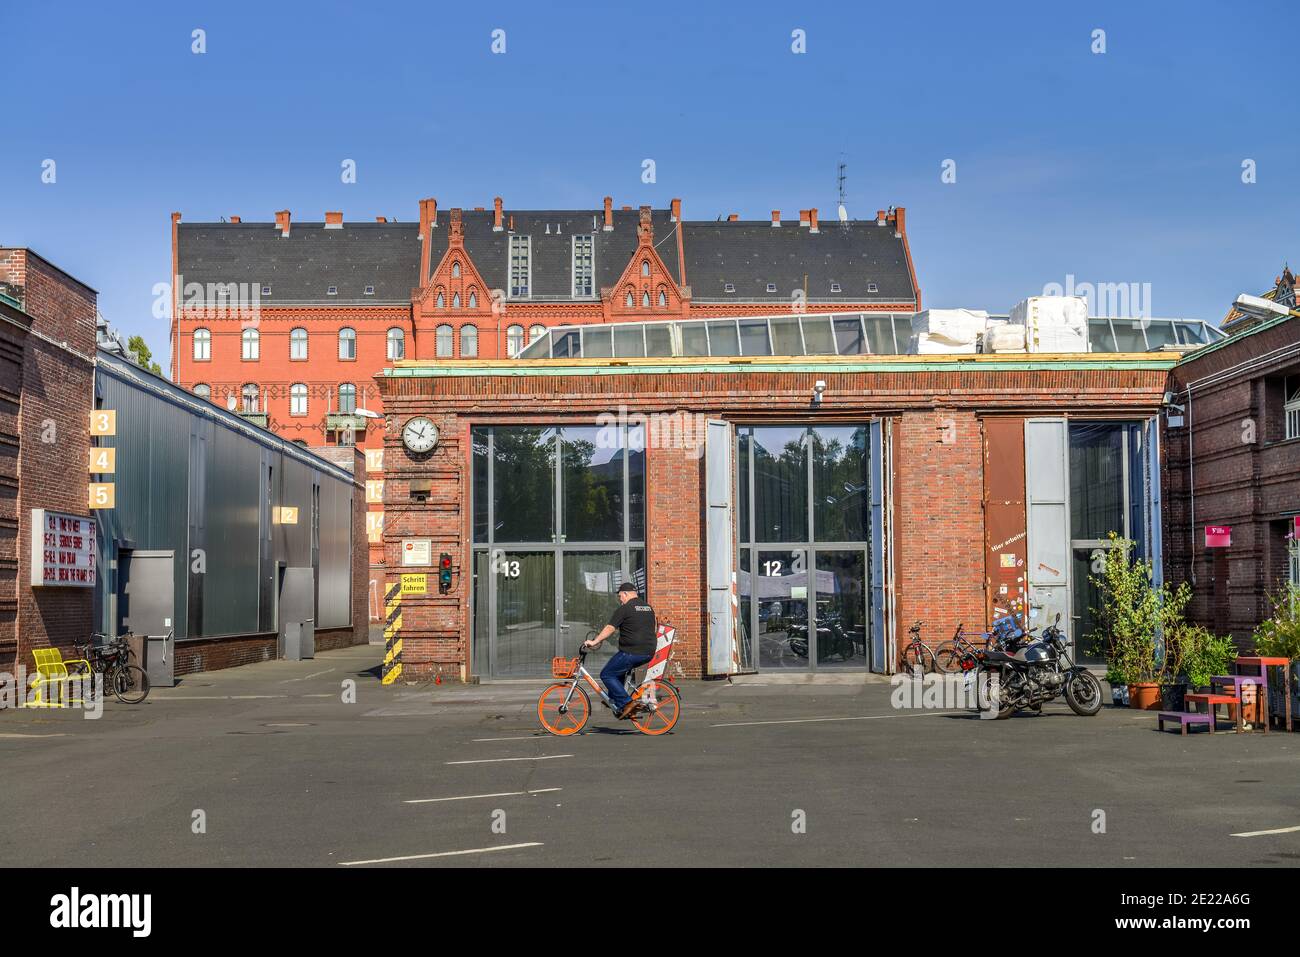 Uferstudios, Uferstrasse, Gesundbrunnen, Mitte, Berlin, Deutschland Stock Photo